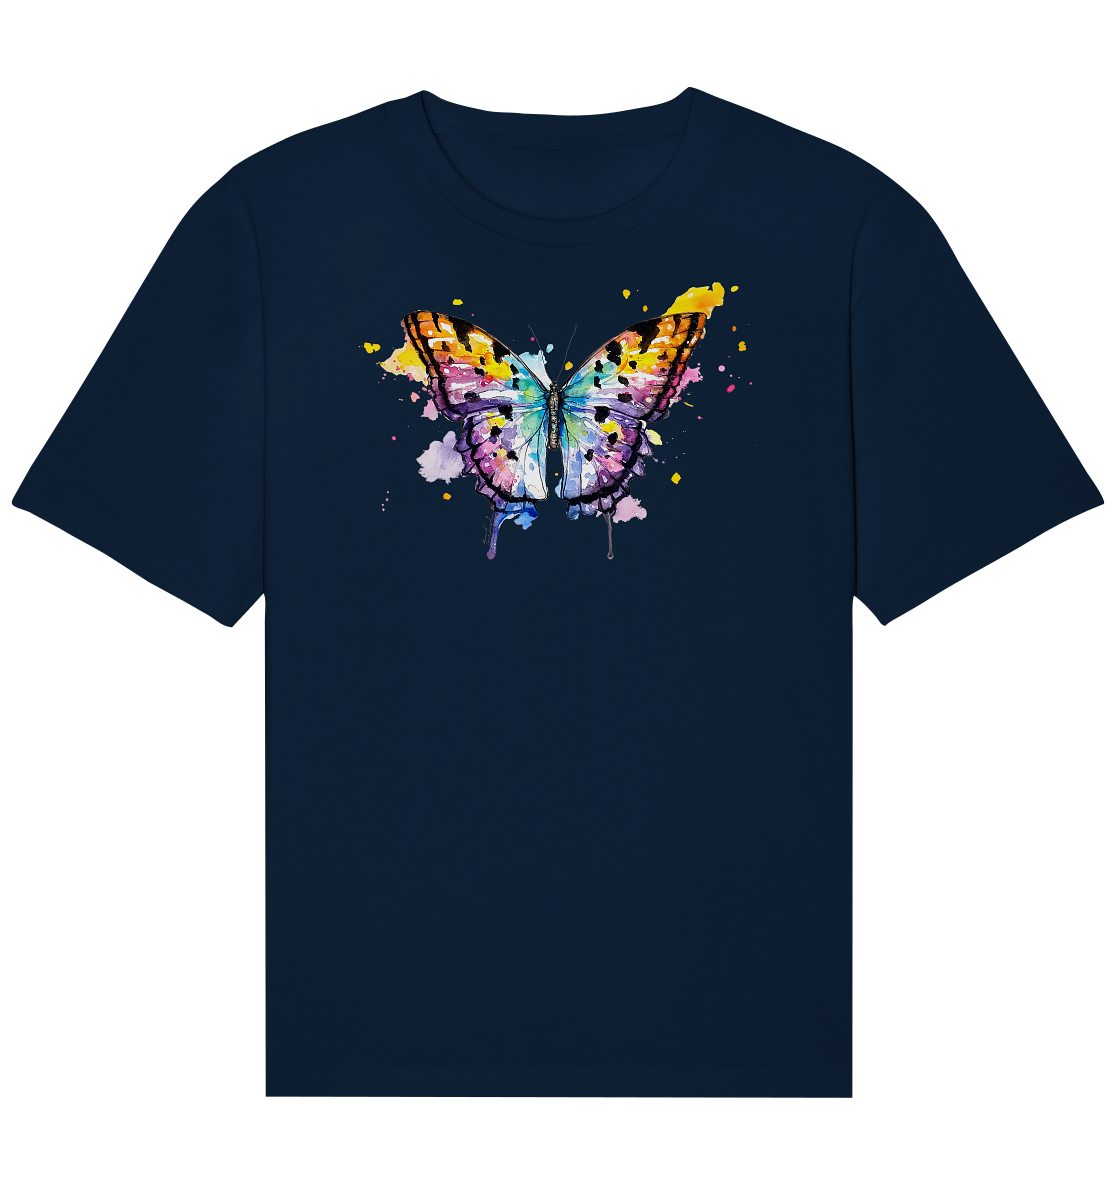 Bunter Schmetterling - Organic Relaxed Shirt